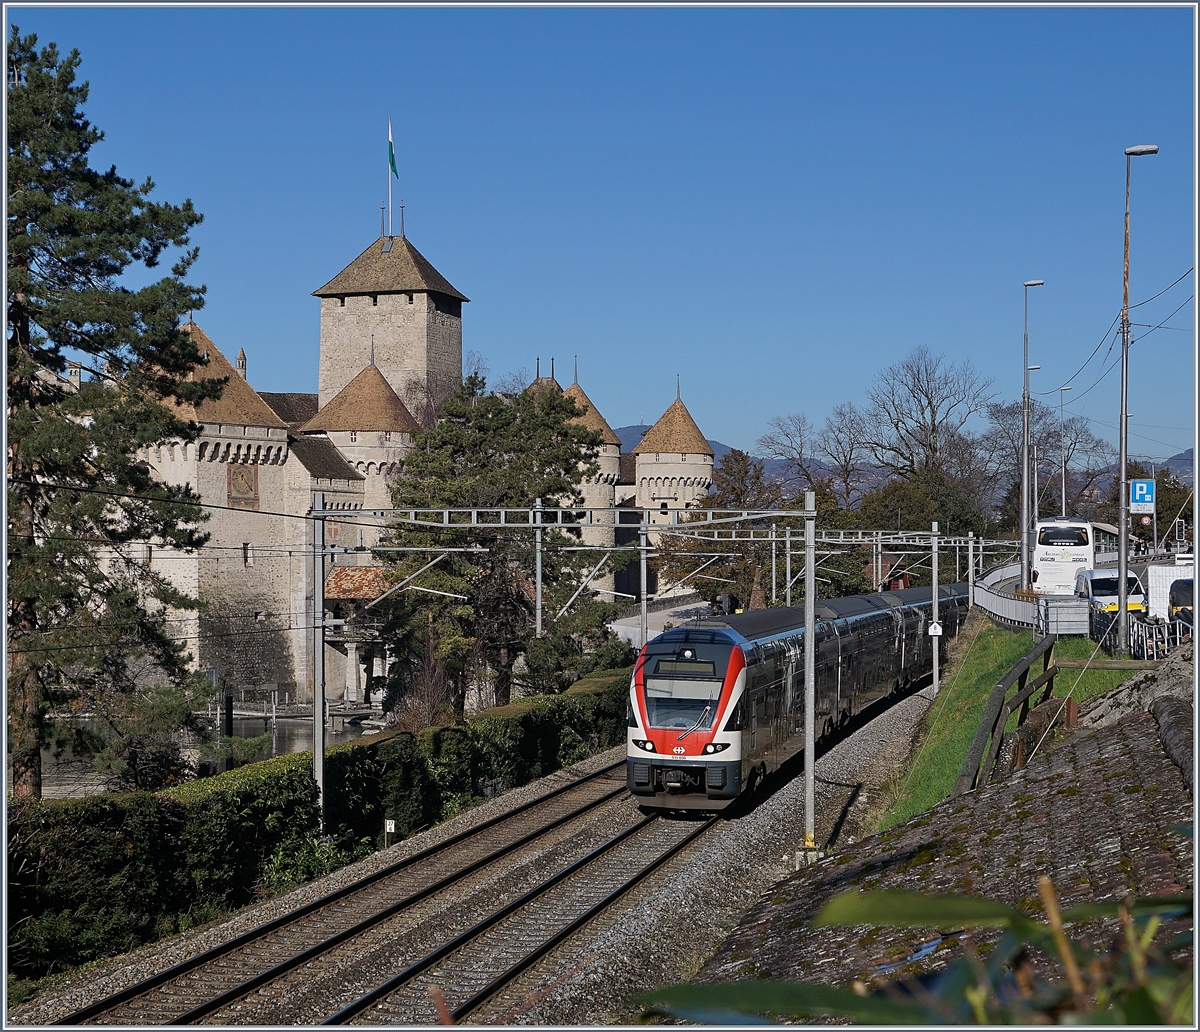 Ein SBB RABe 511  KISS  auf dem Weg nach St-Maurice in unmittelbarer Nähe des Château de Chillon. 

7. Februar 2020